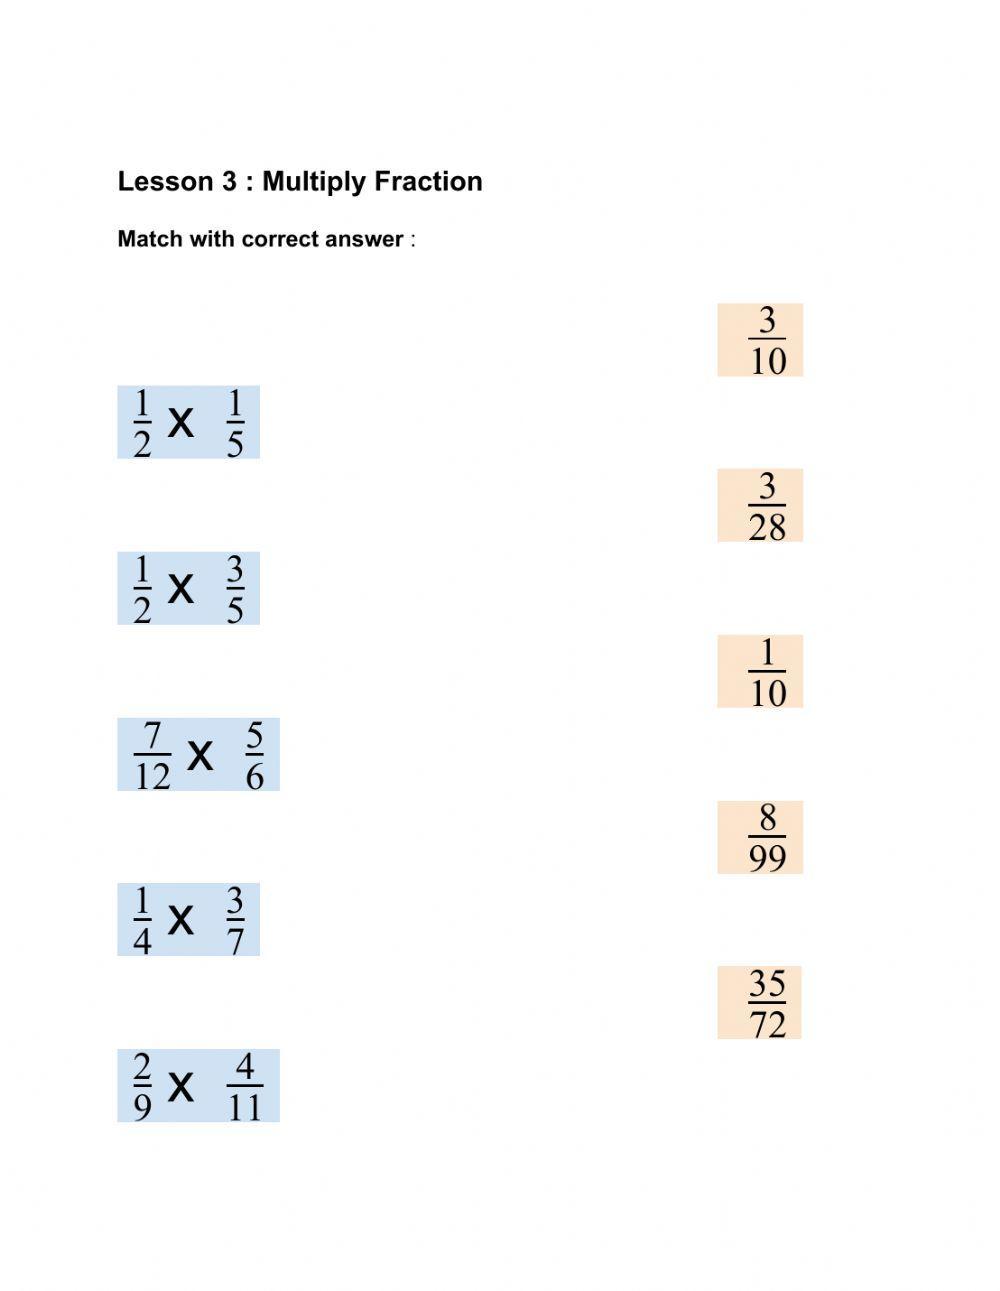 Multiply fraction